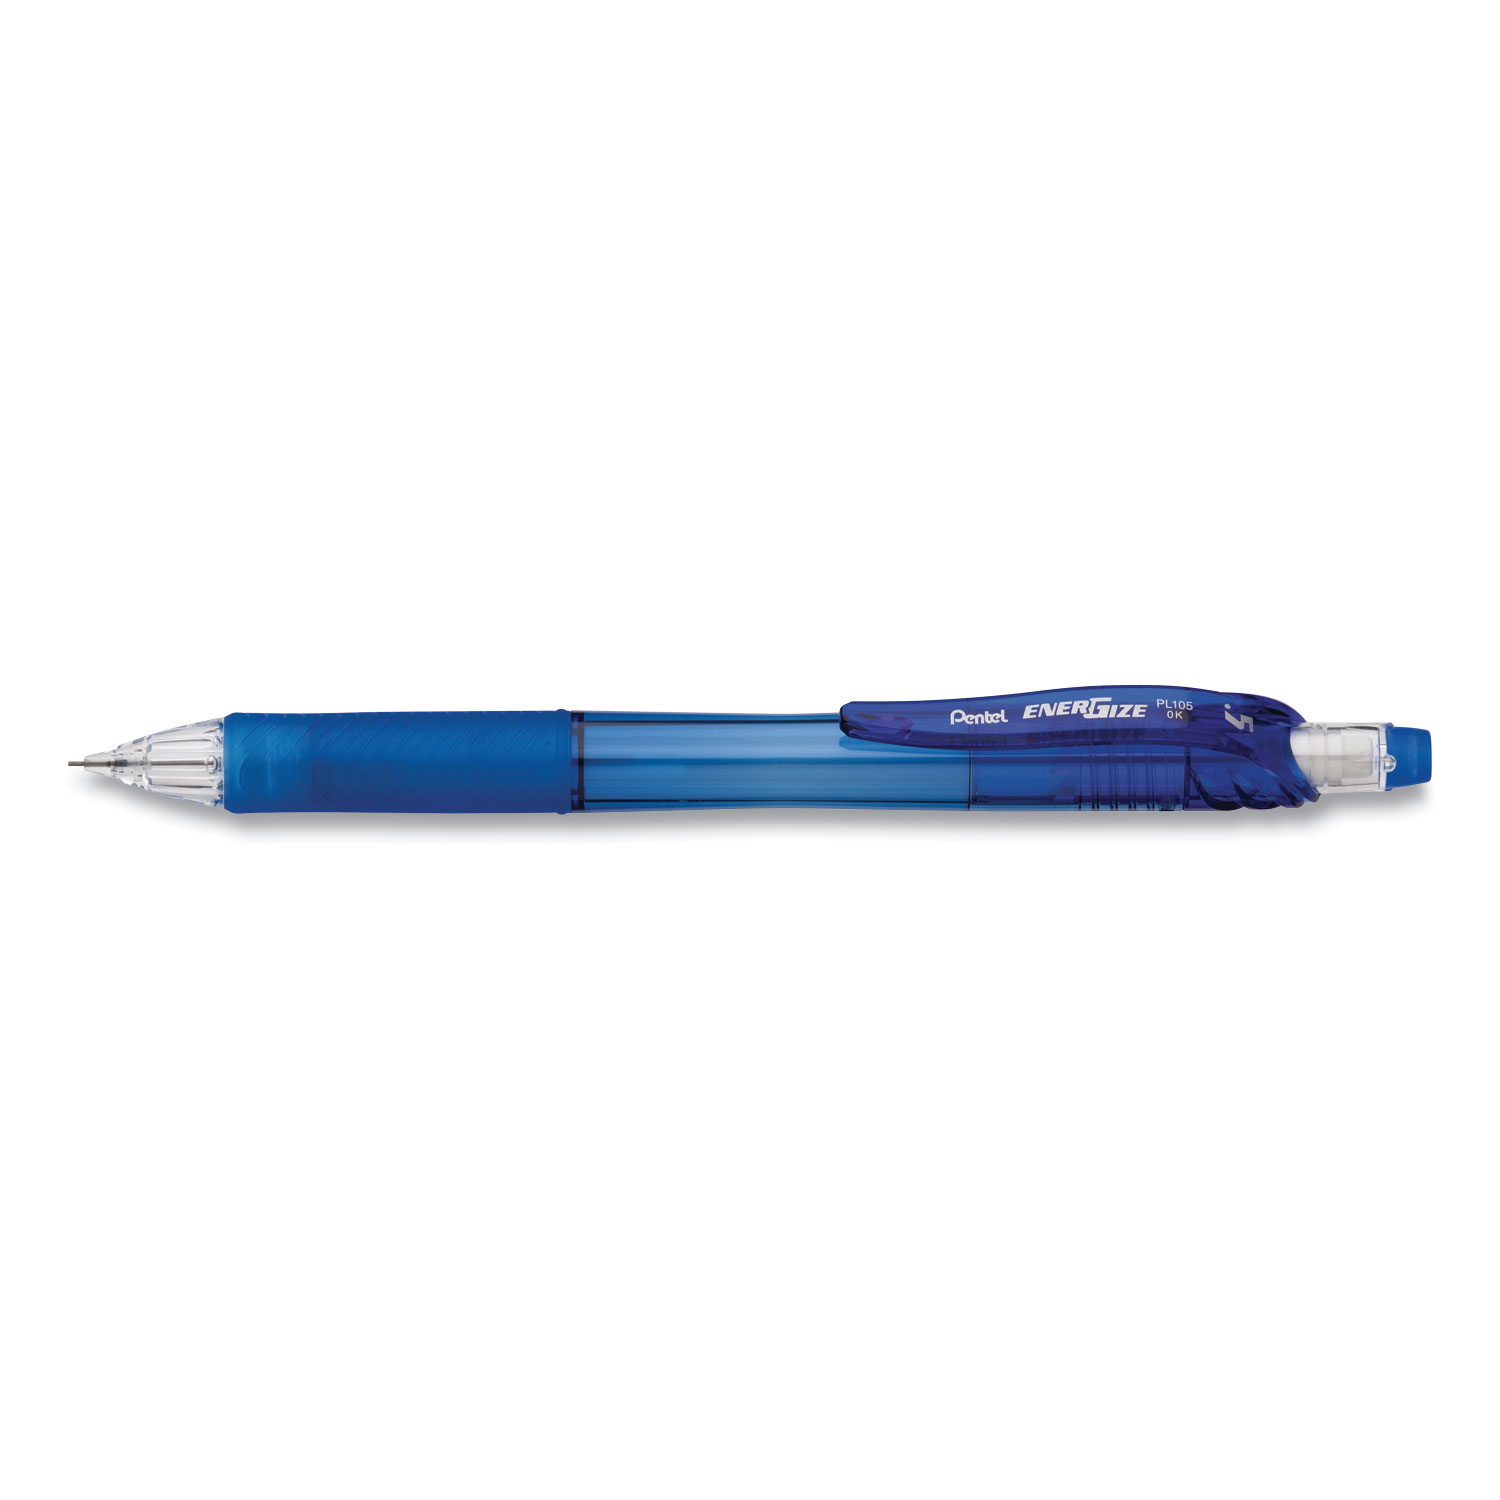  Pentel PL105C EnerGize-X Mechanical Pencil, 0.5 mm, HB (#2.5), Black Lead, Blue Barrel, Dozen (PENPL105C) 